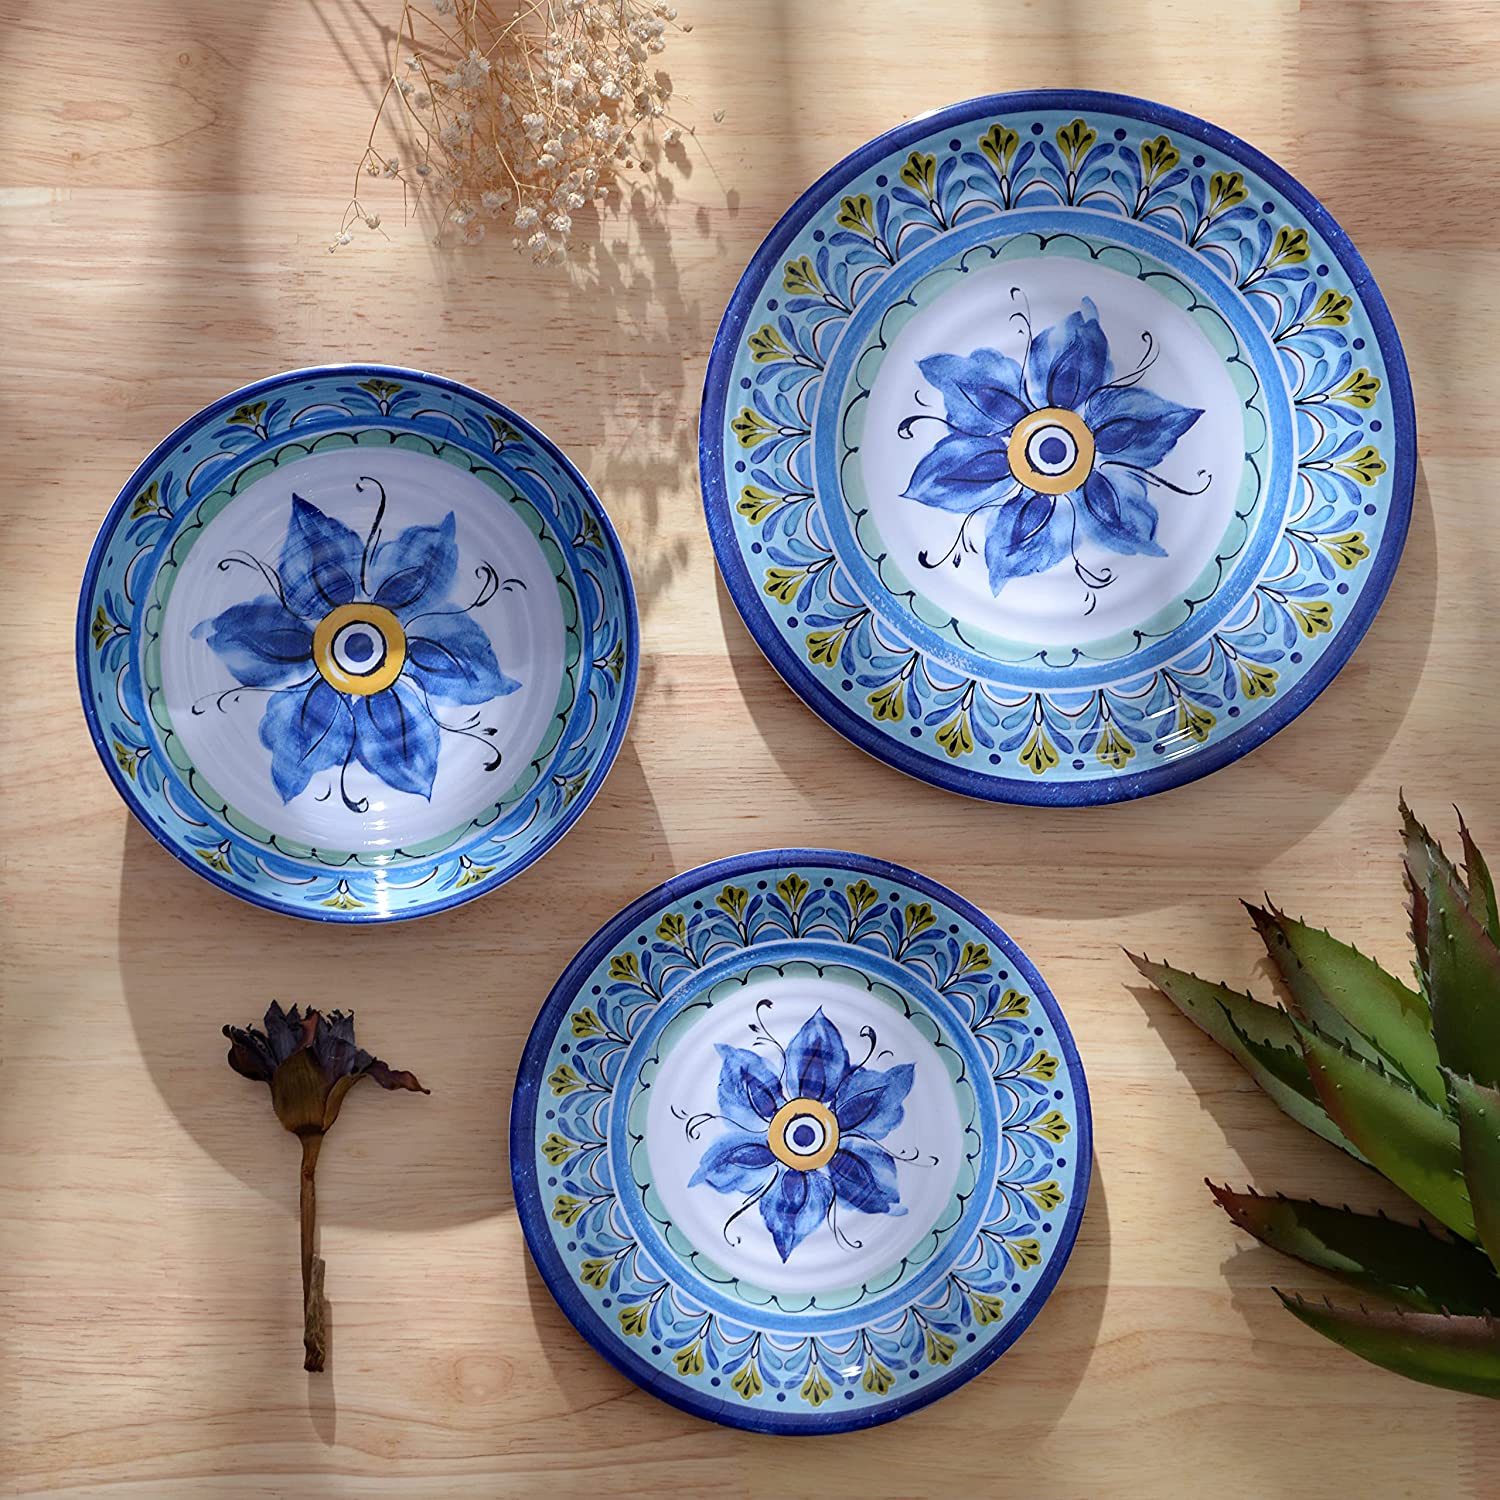 BPA Free Blue flower Design 12pcs Plates and Bowls Melamine Dinnerware Sets for Dishwasher Safe